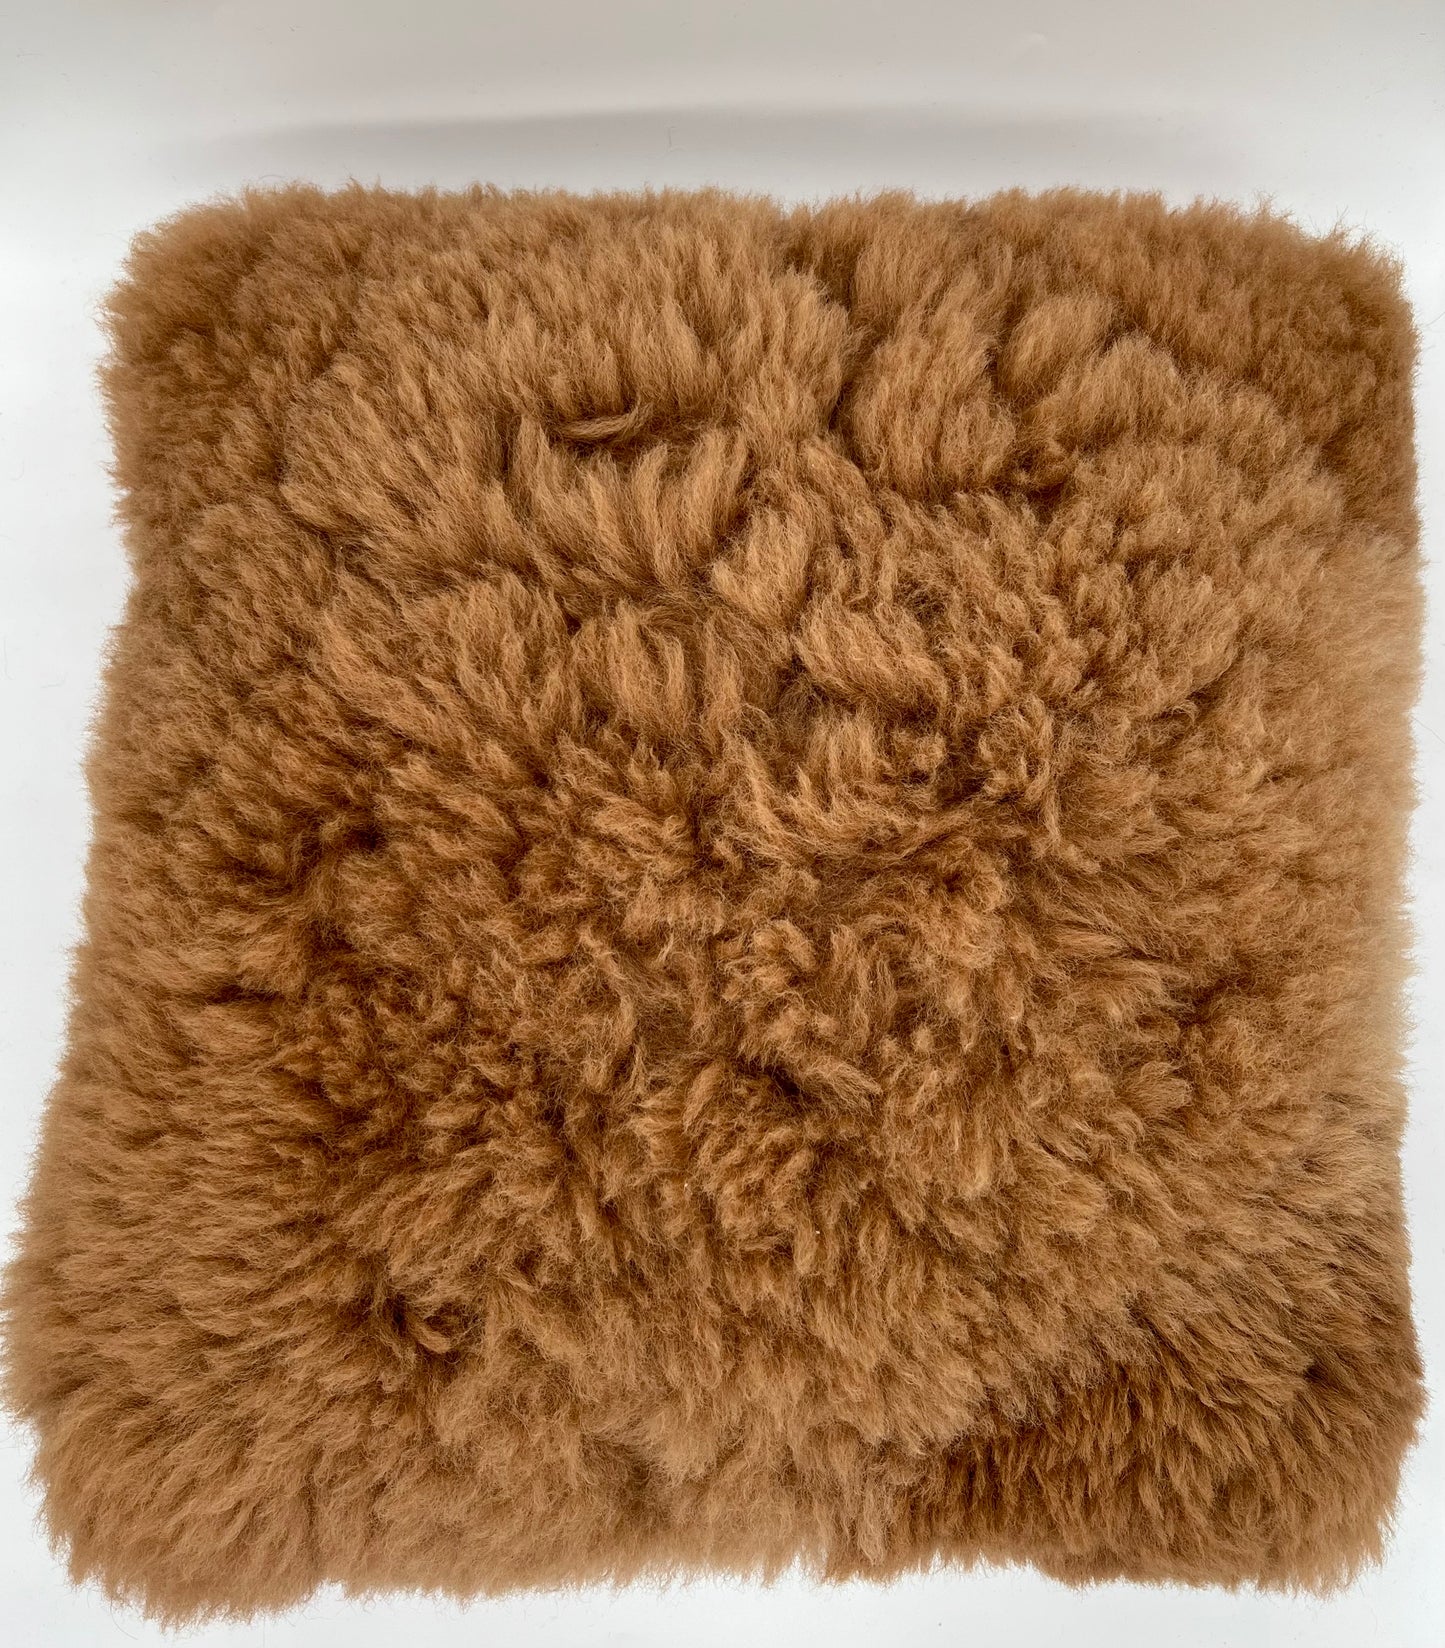 Kissen aus Alpakawolle: Nachhaltiges Material, kuschelig weich und absoluter Echtfell Hingucker für zuhause